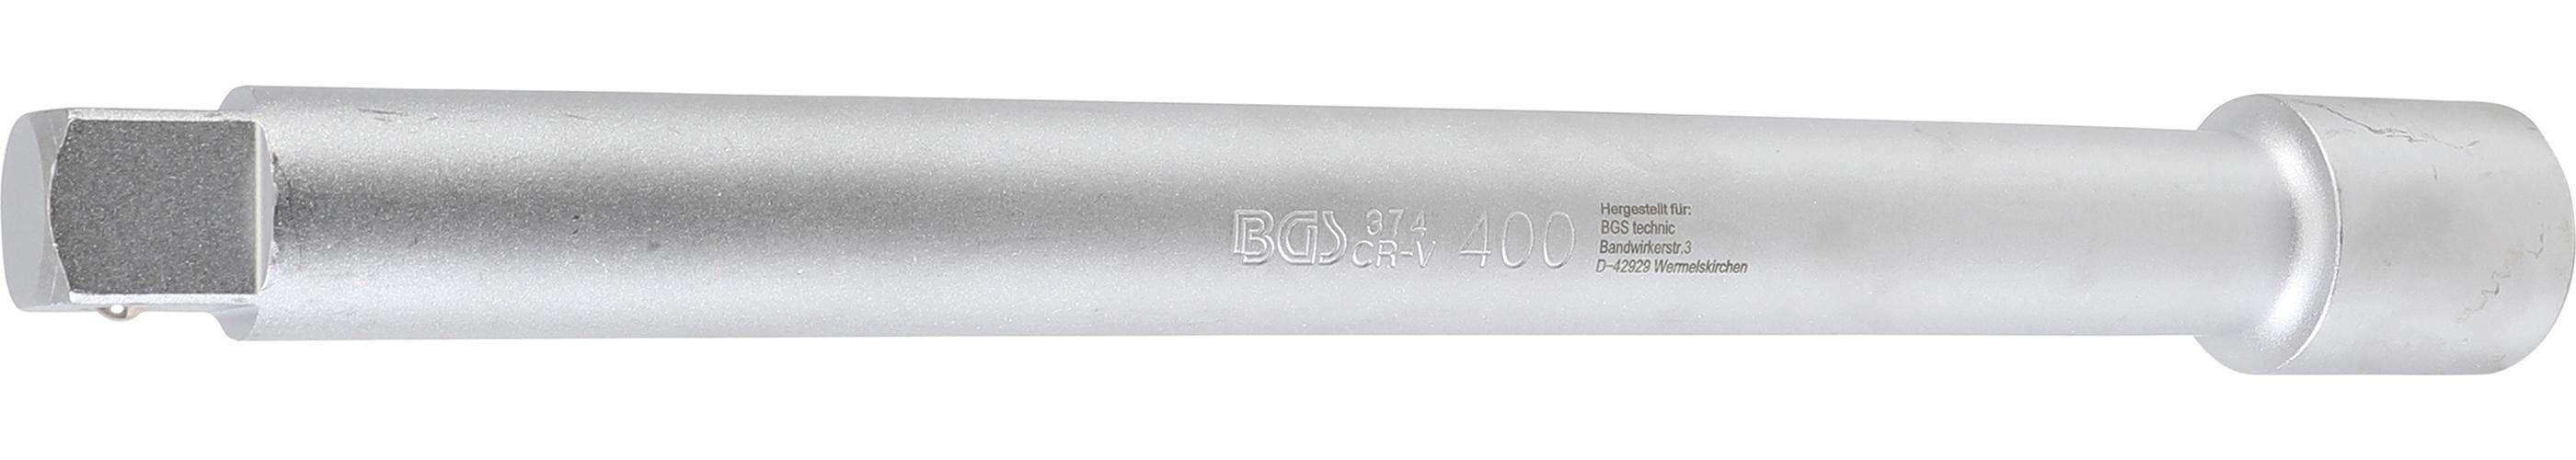 BGS technic Ratschenringschlüssel Verlängerung, 25 mm (1), 400 mm